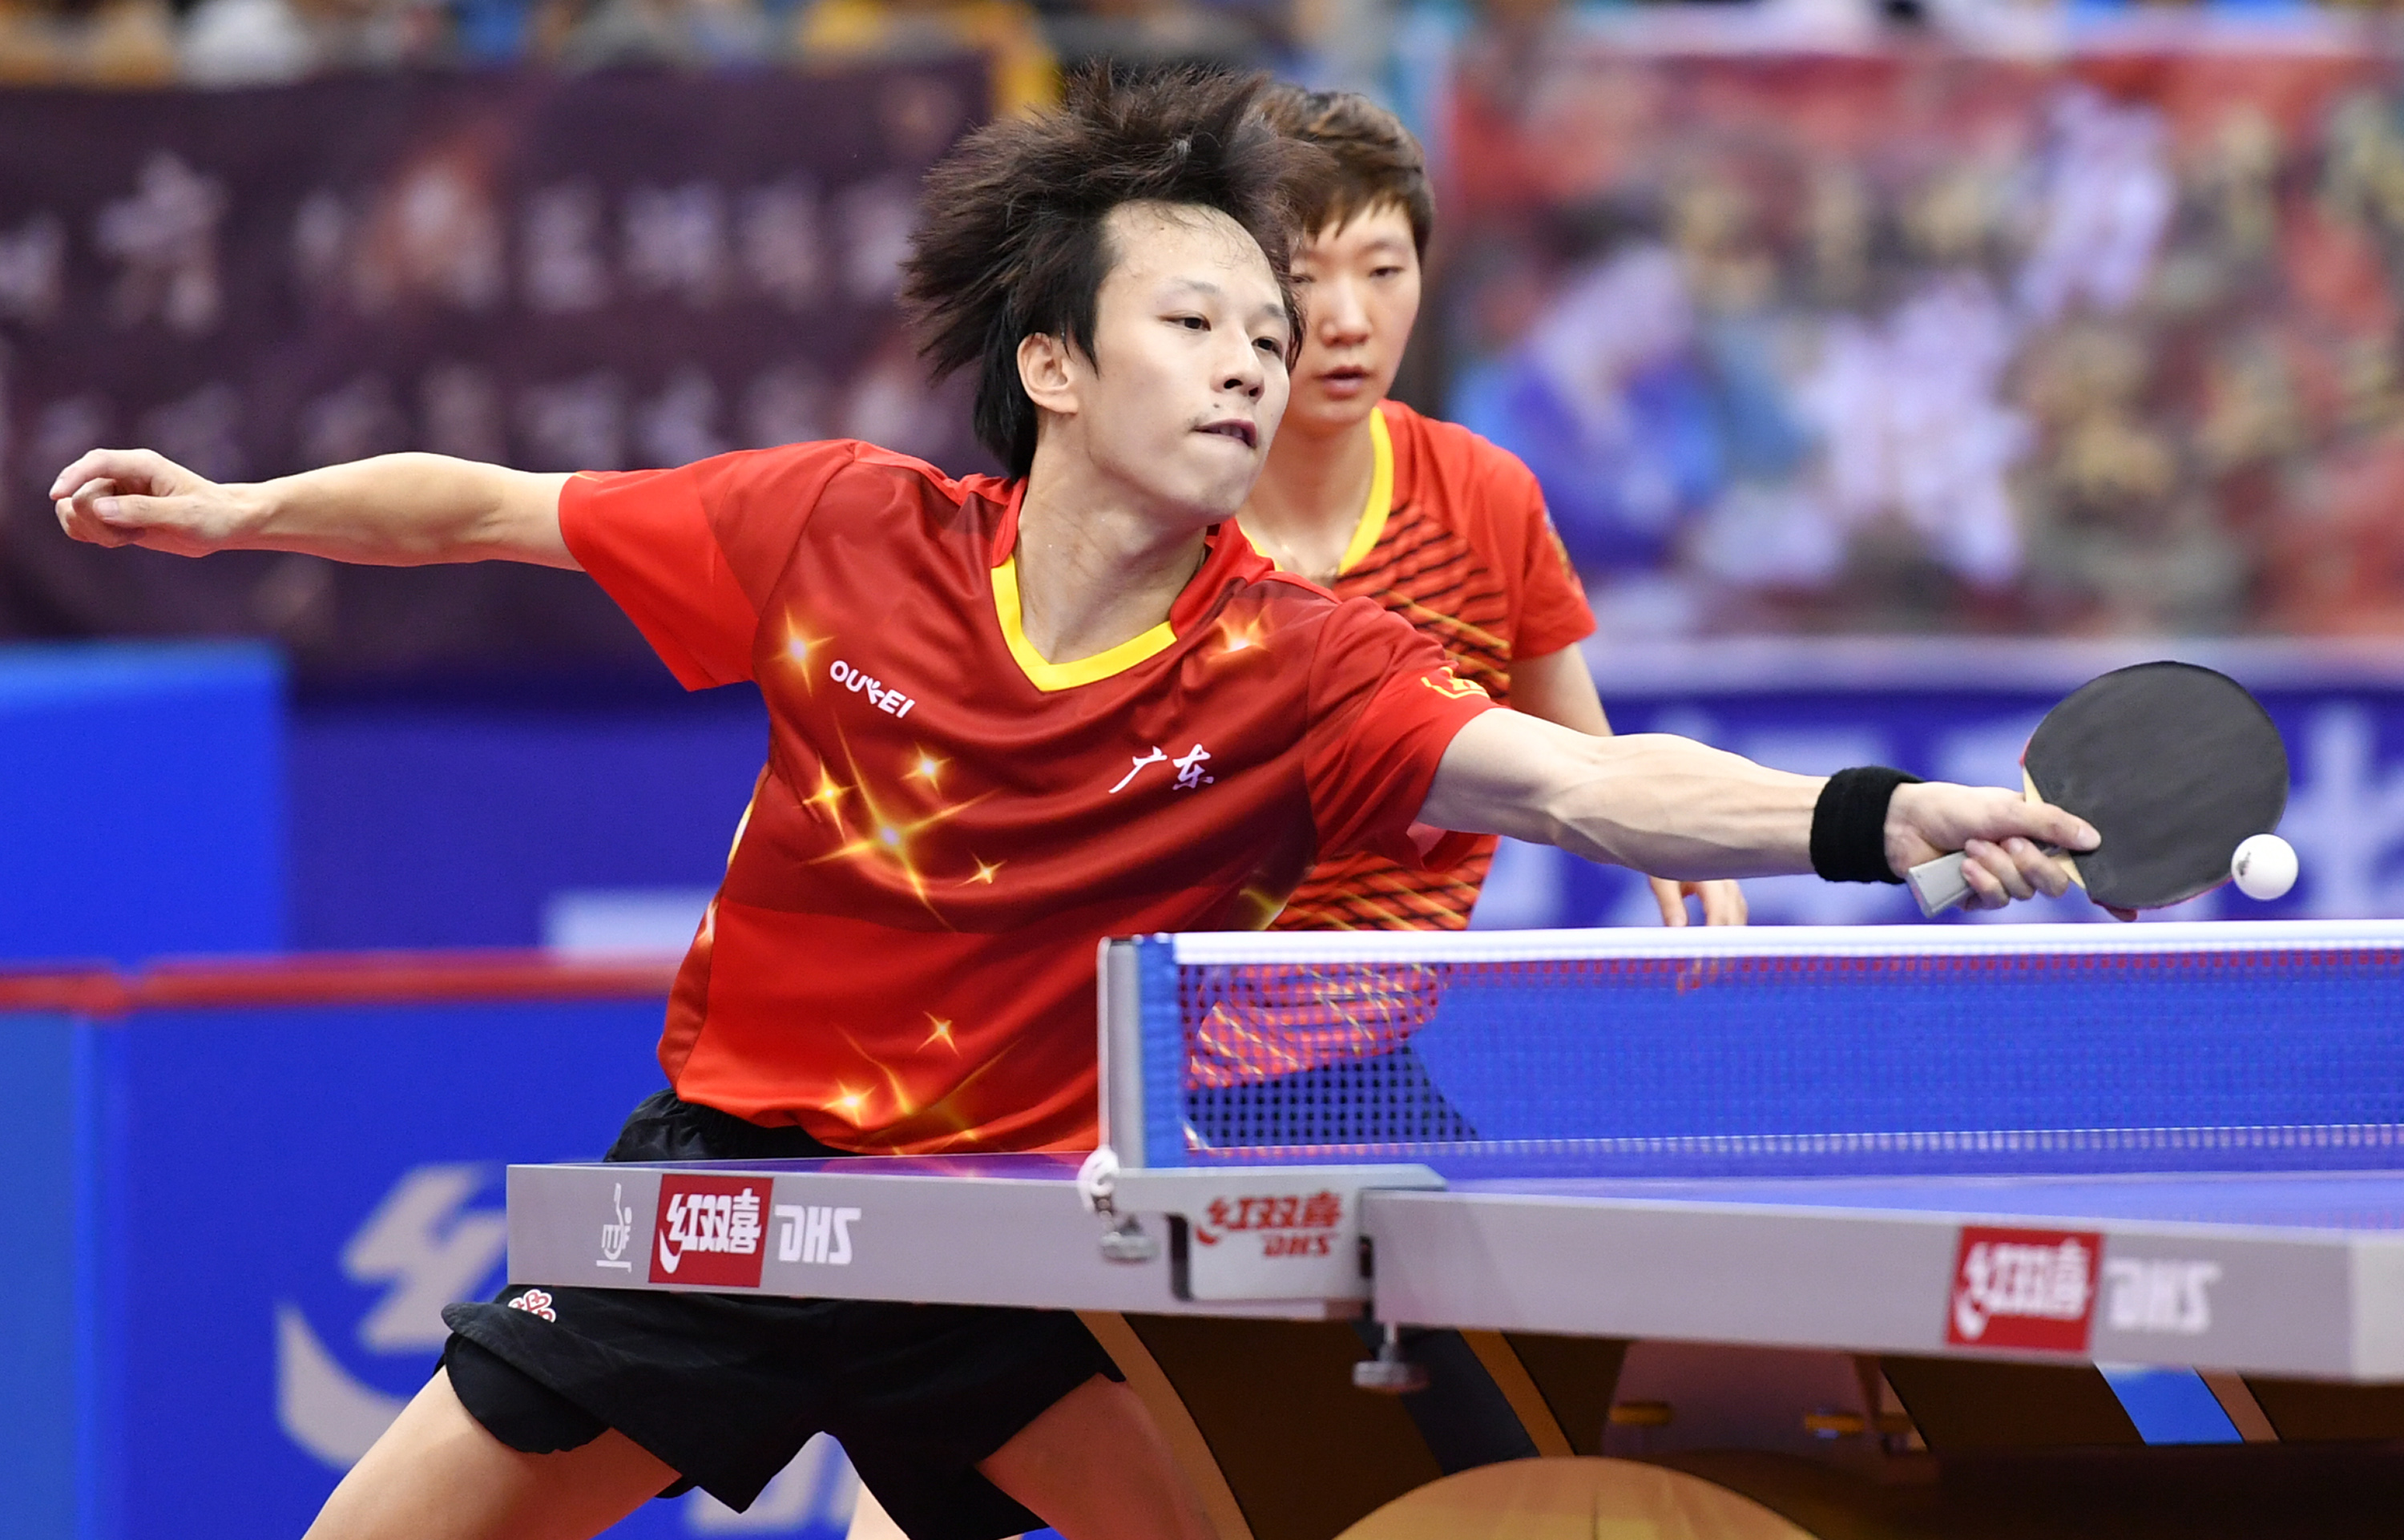 新华社记者李然摄当日,在天津武清举行的2019年全国乒乓球锦标赛混合